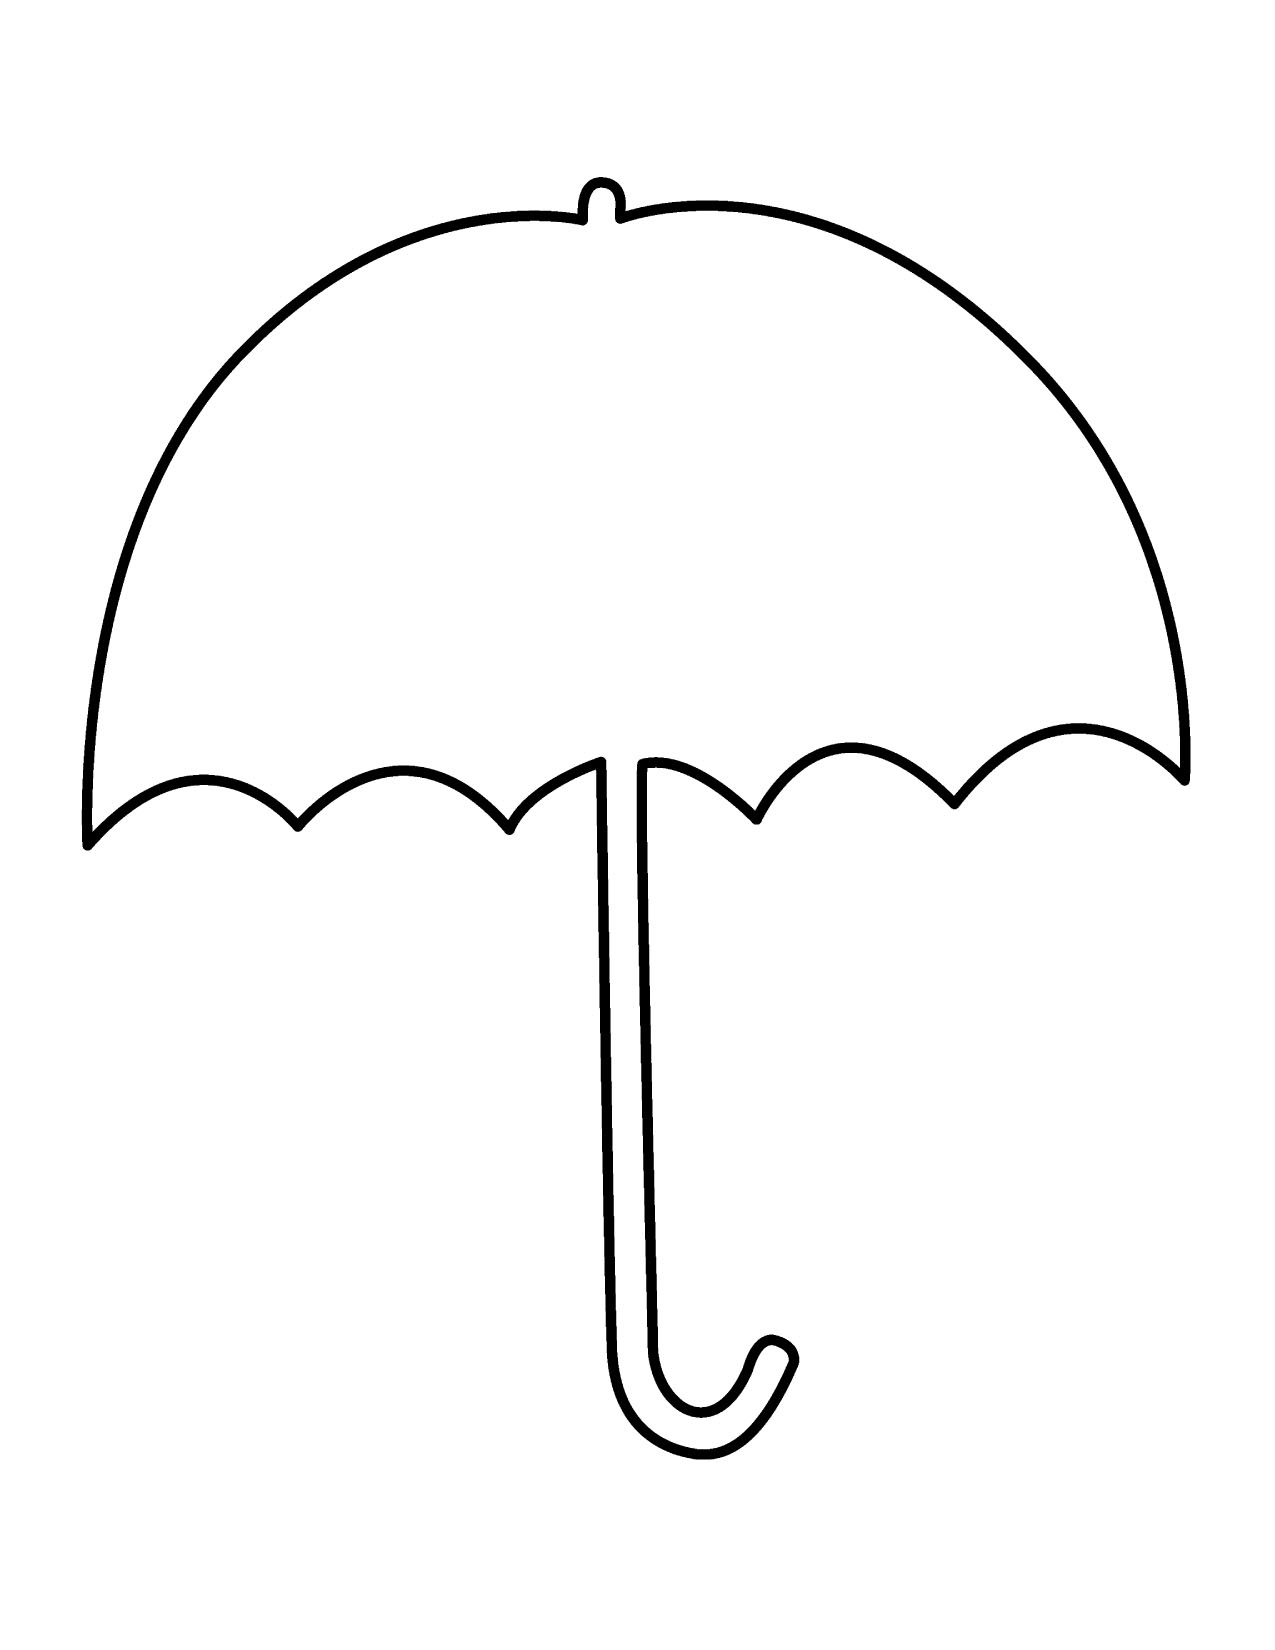 Umbrella clip art | Clipart Panda - Free Clipart Images